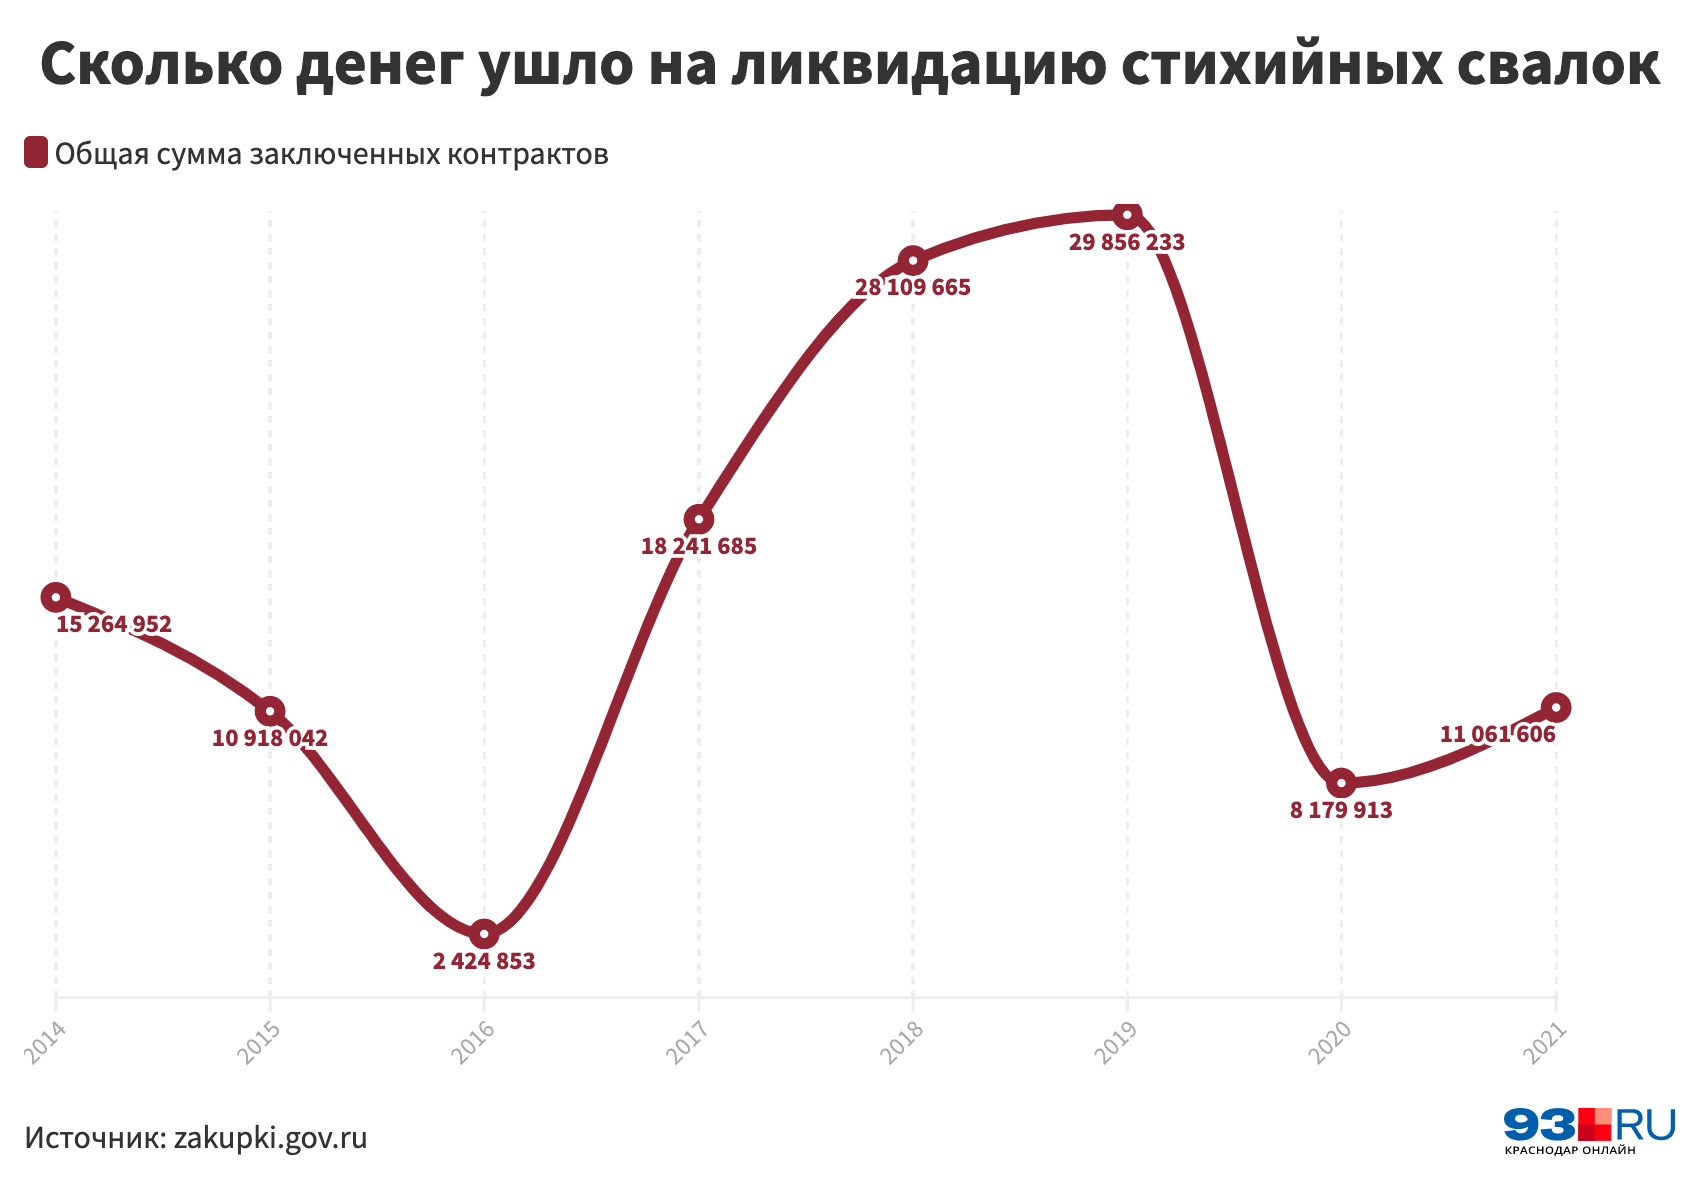 Пик трат пришелся на 2018–2019 гг. — каждый год почти 30 млн рублей